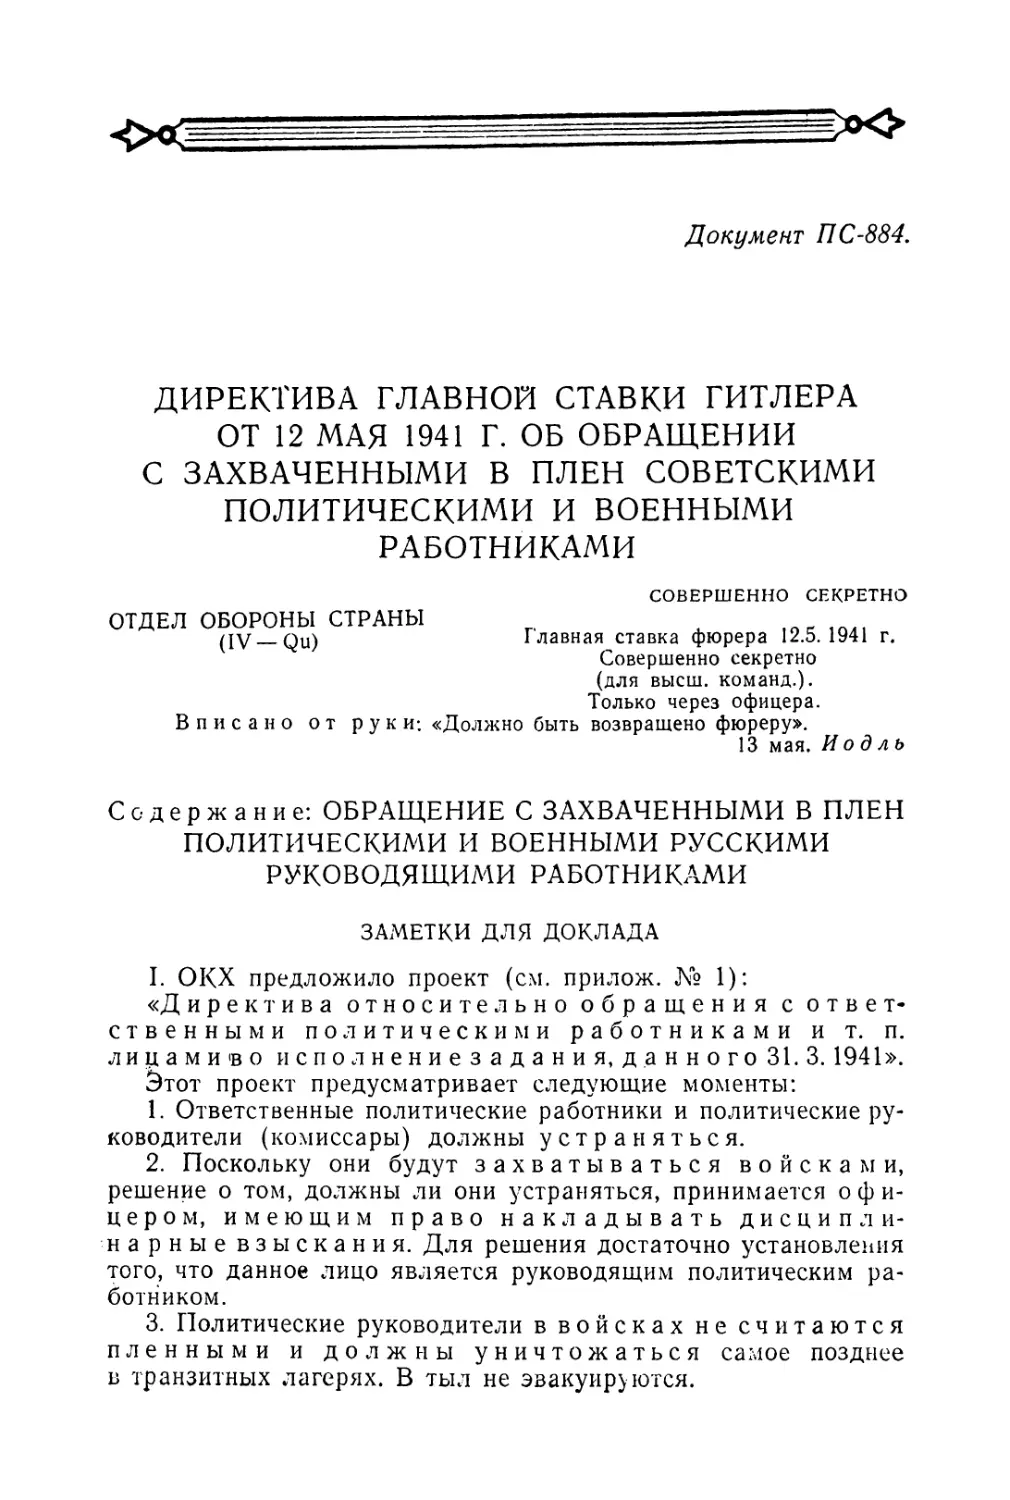 Директива главной ставки Гитлера от 12 мая 1941 г. об обращении с захваченными в плен советскими политическими и военными работниками